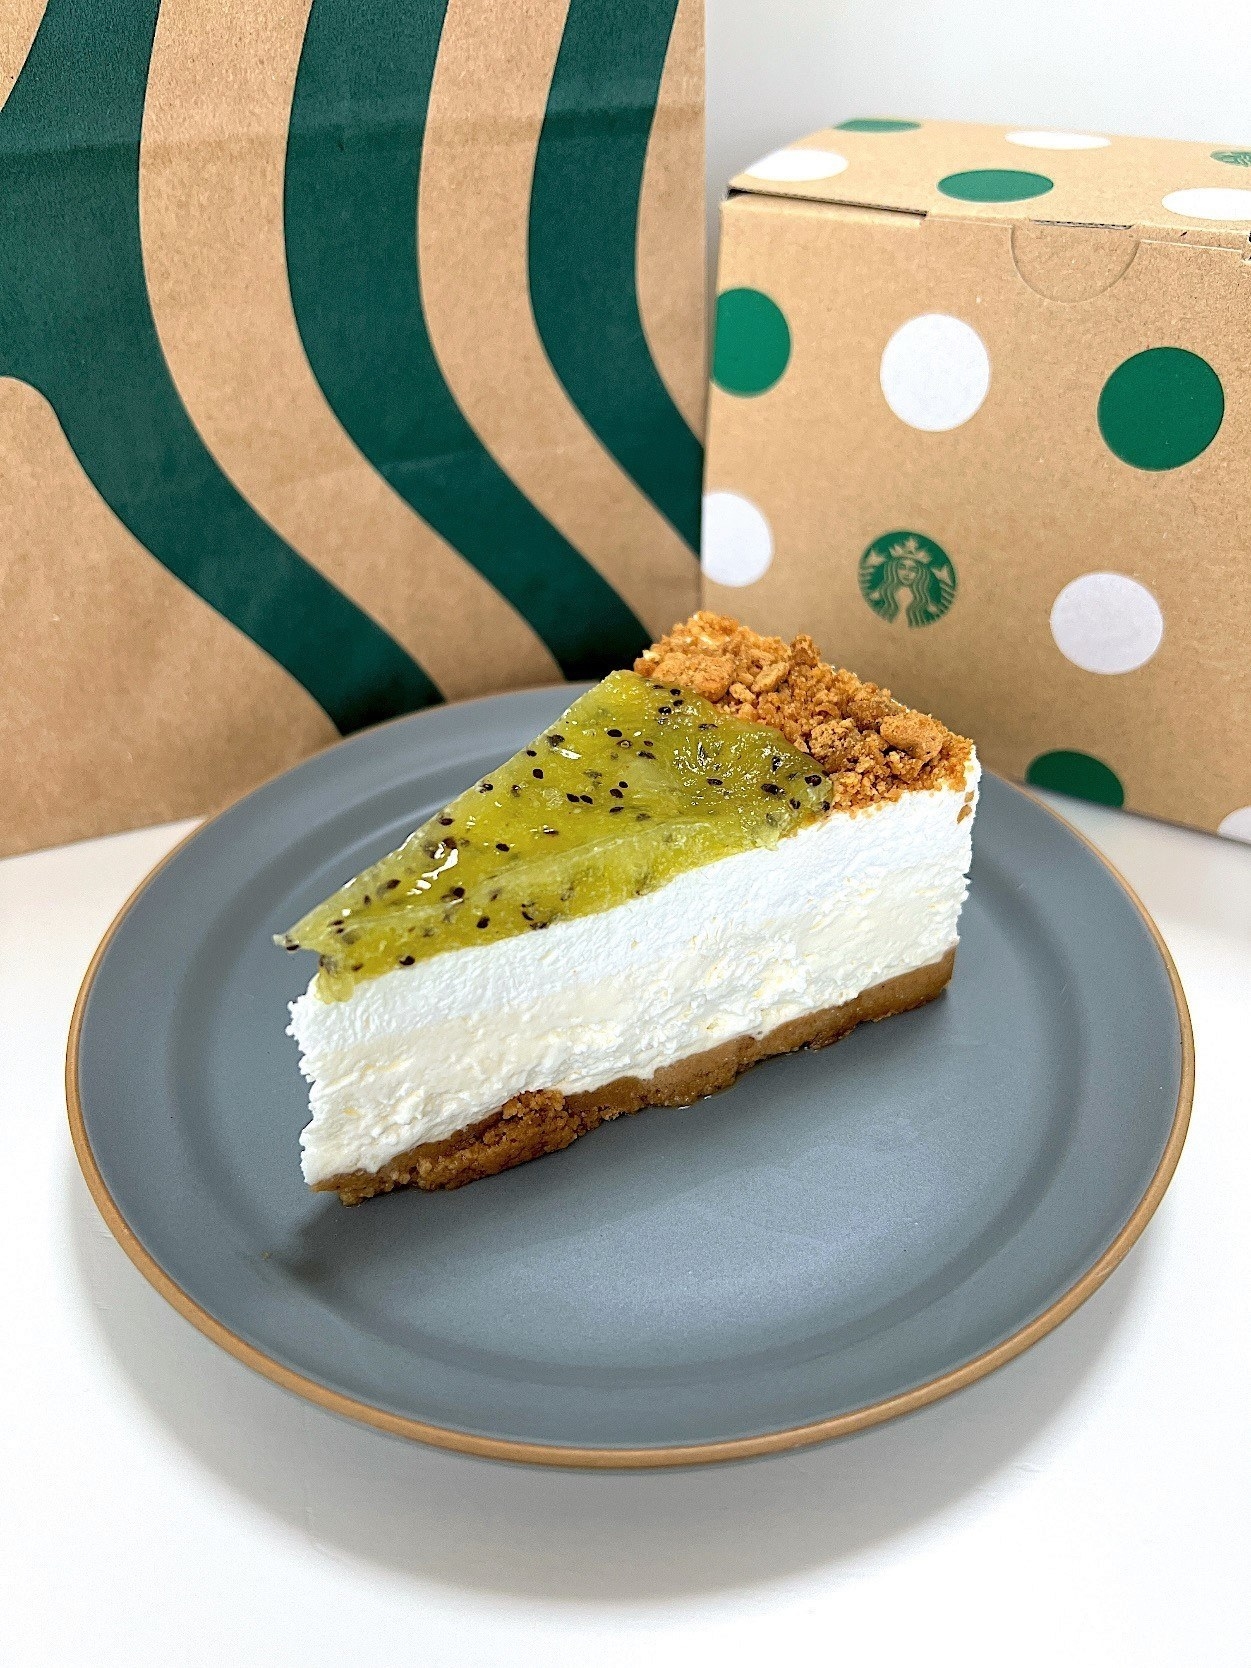 Starbucks（スターバックス）のおすすめスイーツ「キウイフルーツのレアチーズケーキ」爽やかな酸味がおいしいイチオシメニュー